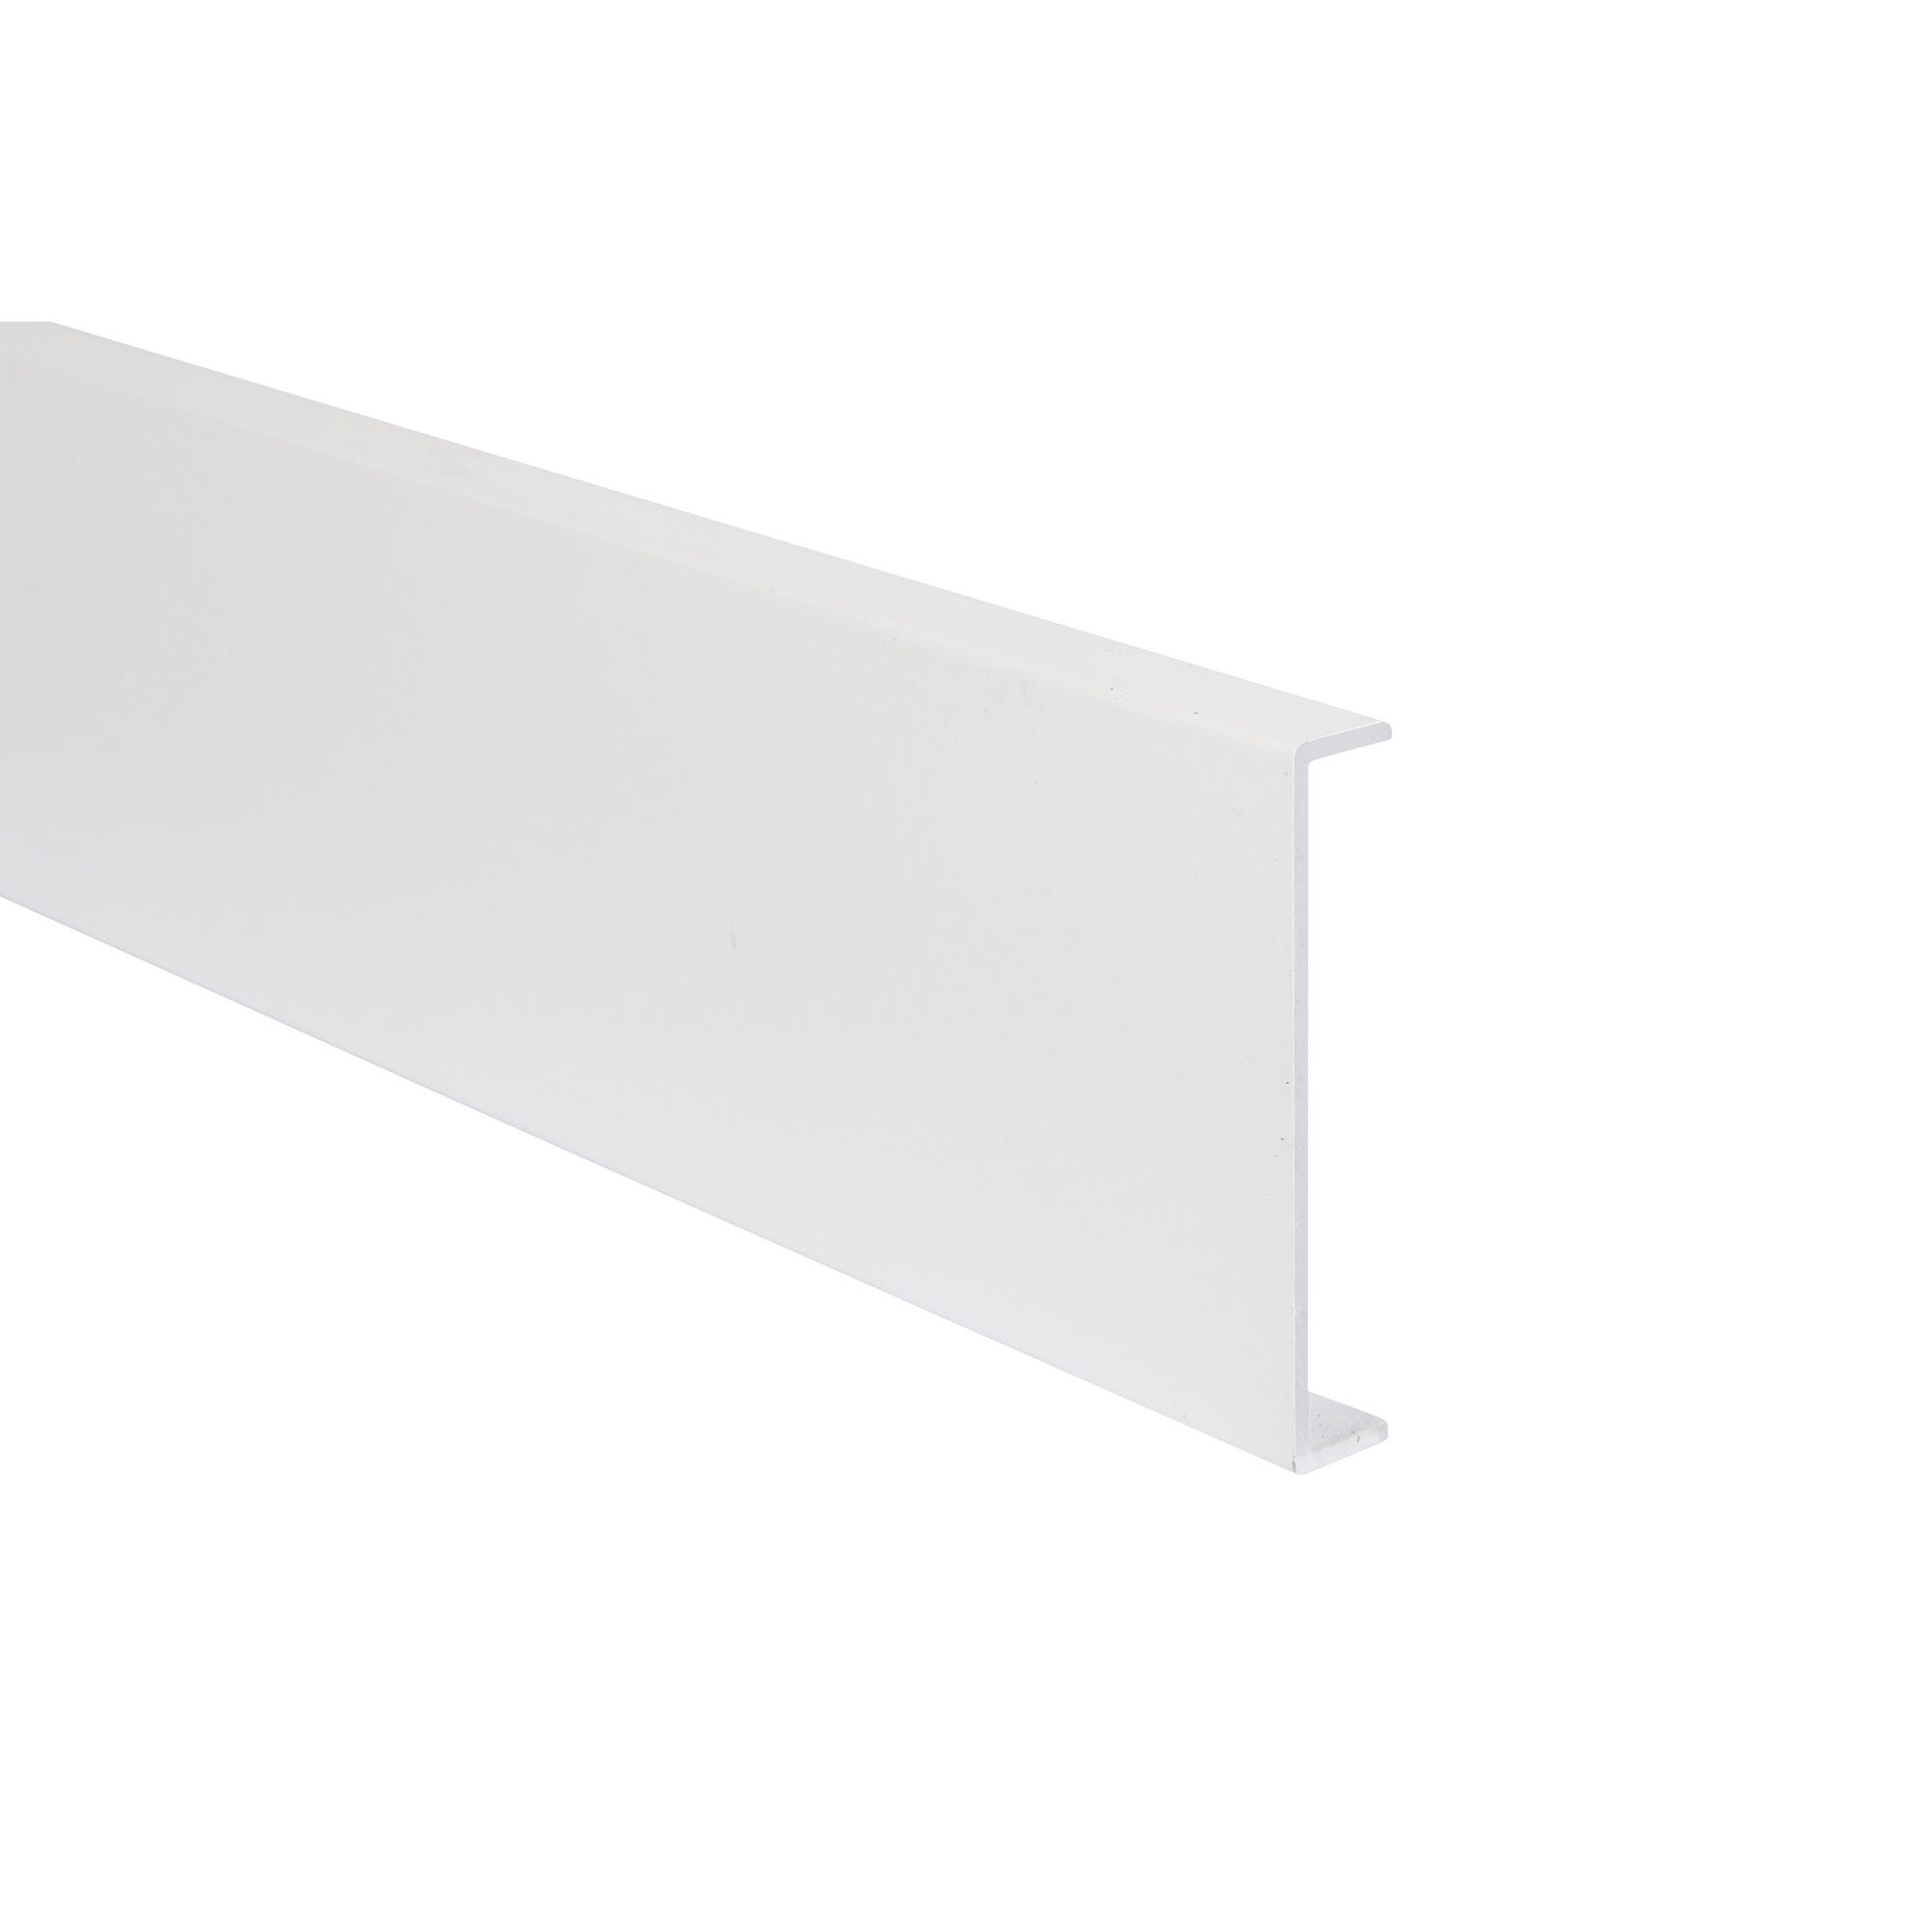 Nez de cloison aluminium blanc 54 mm Long.2,60 m 0